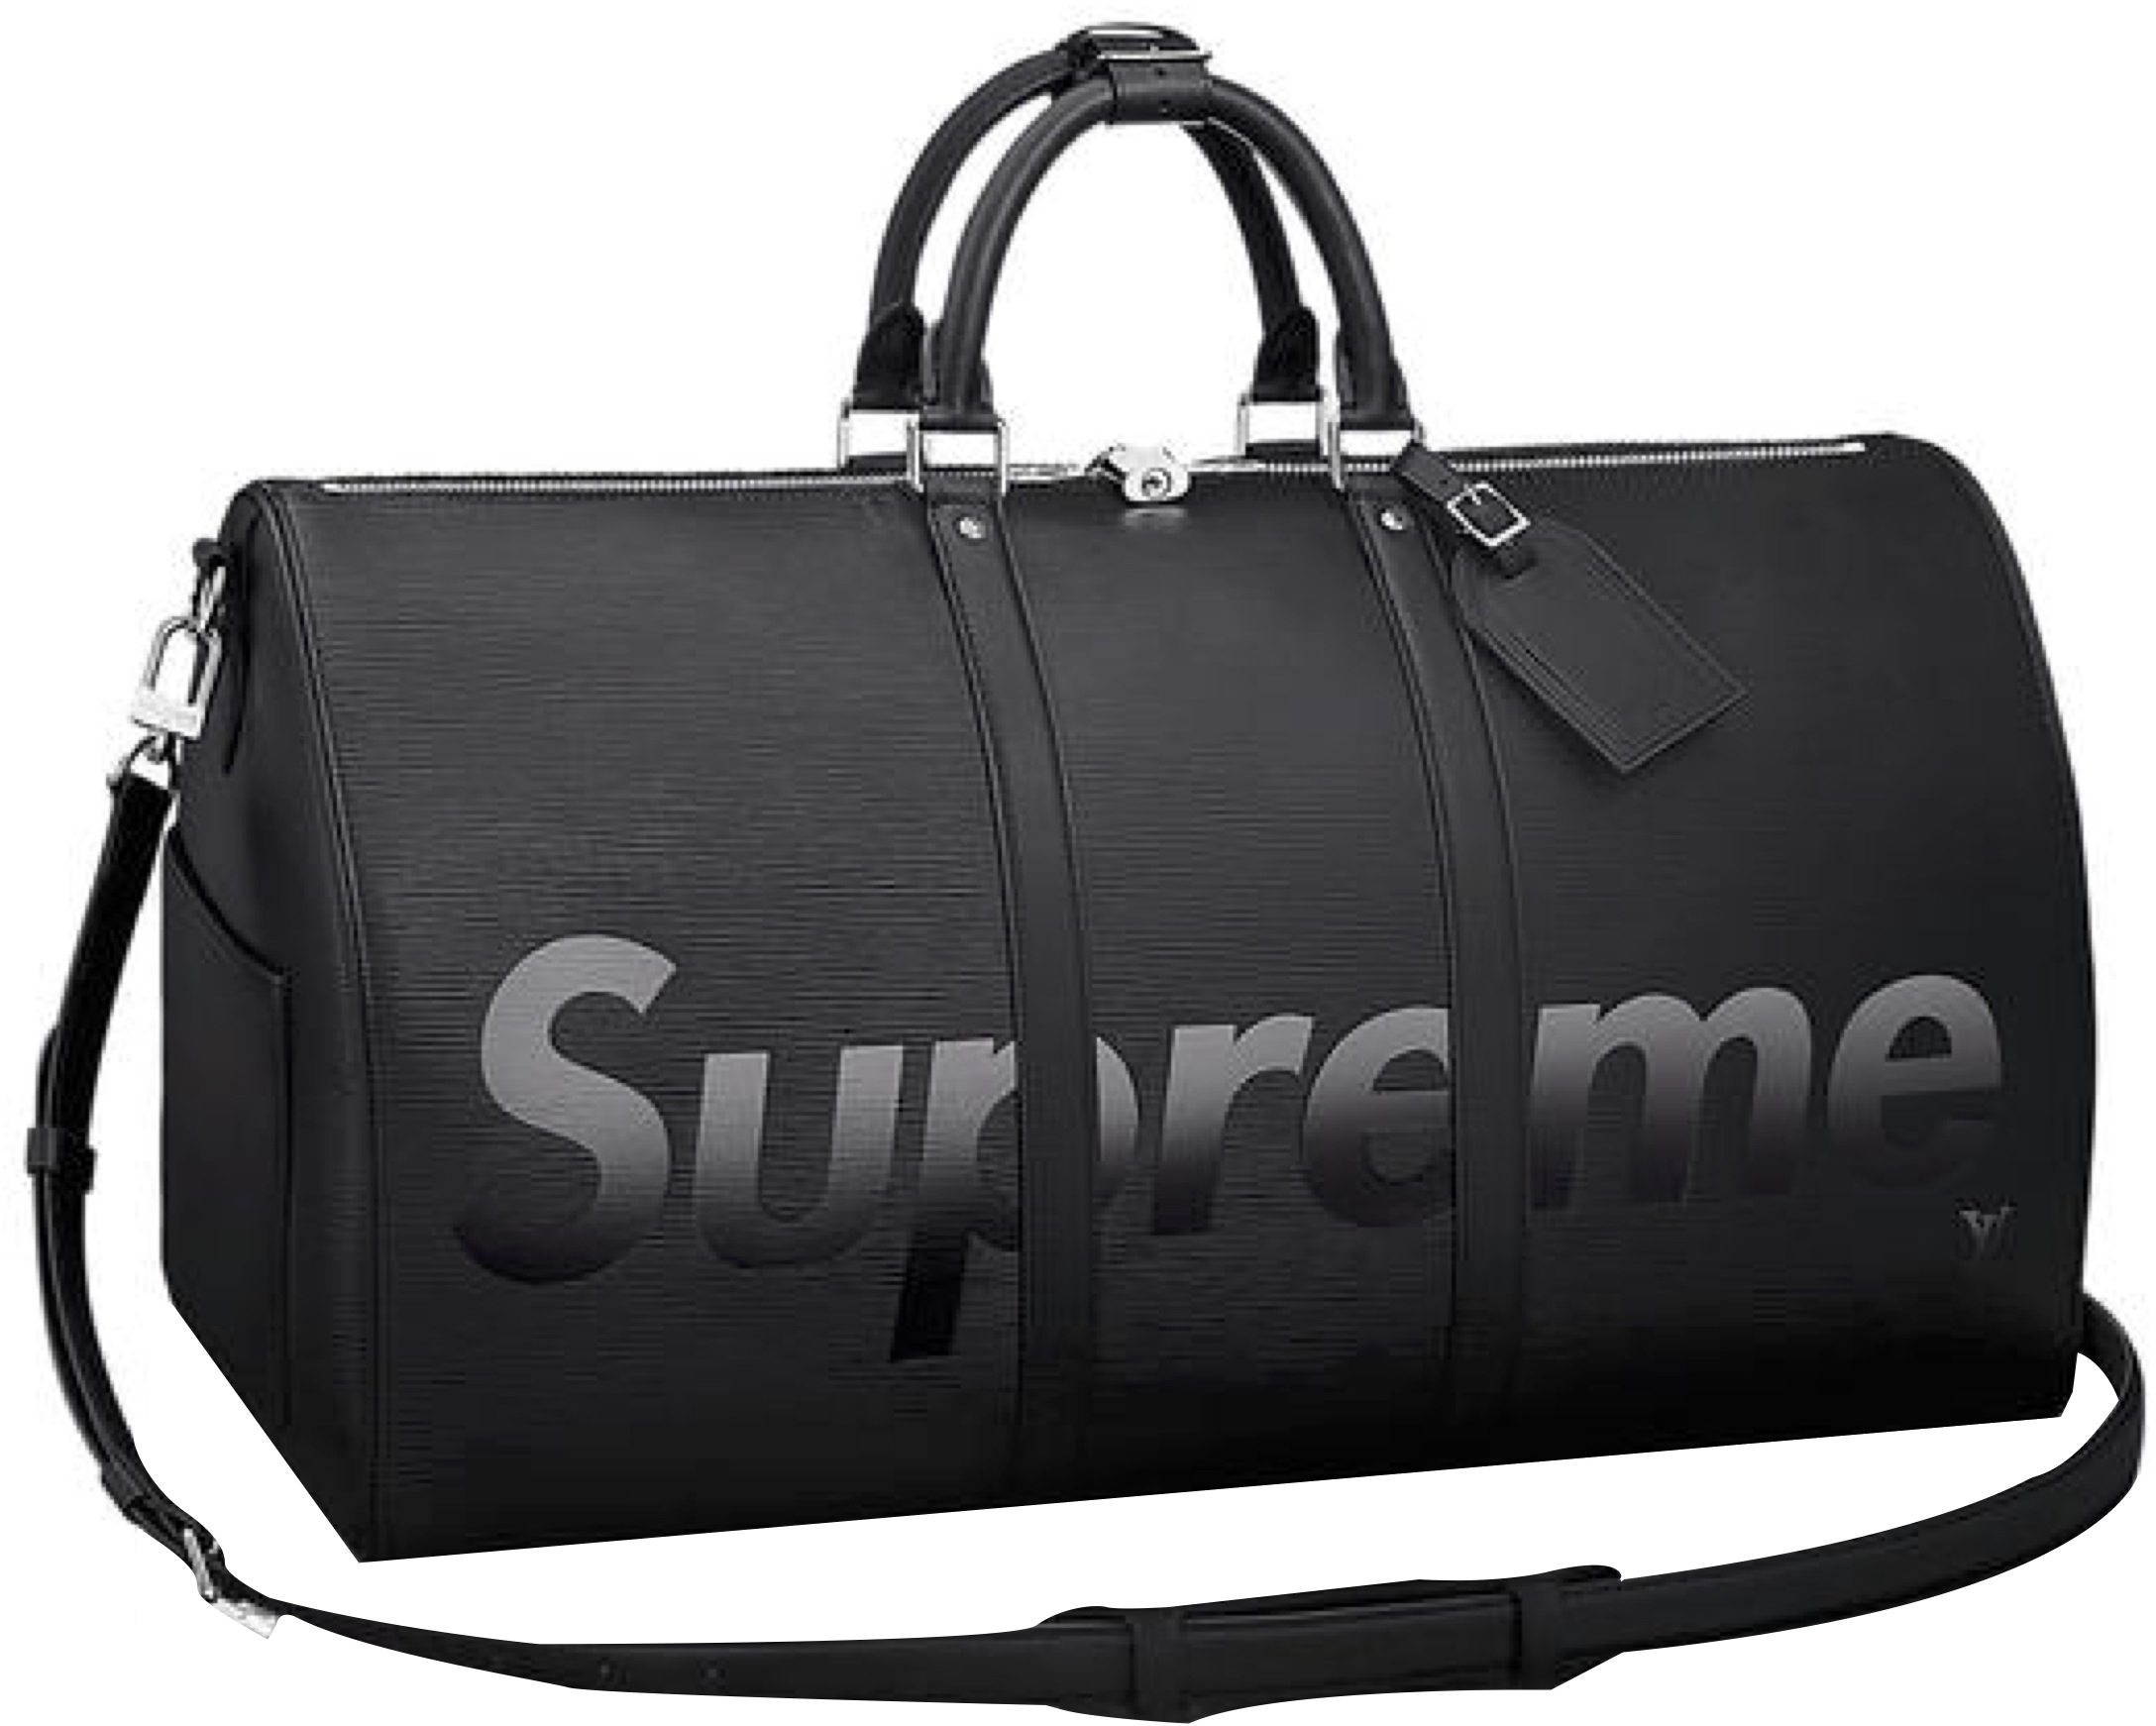 supreme duffle bag stockx